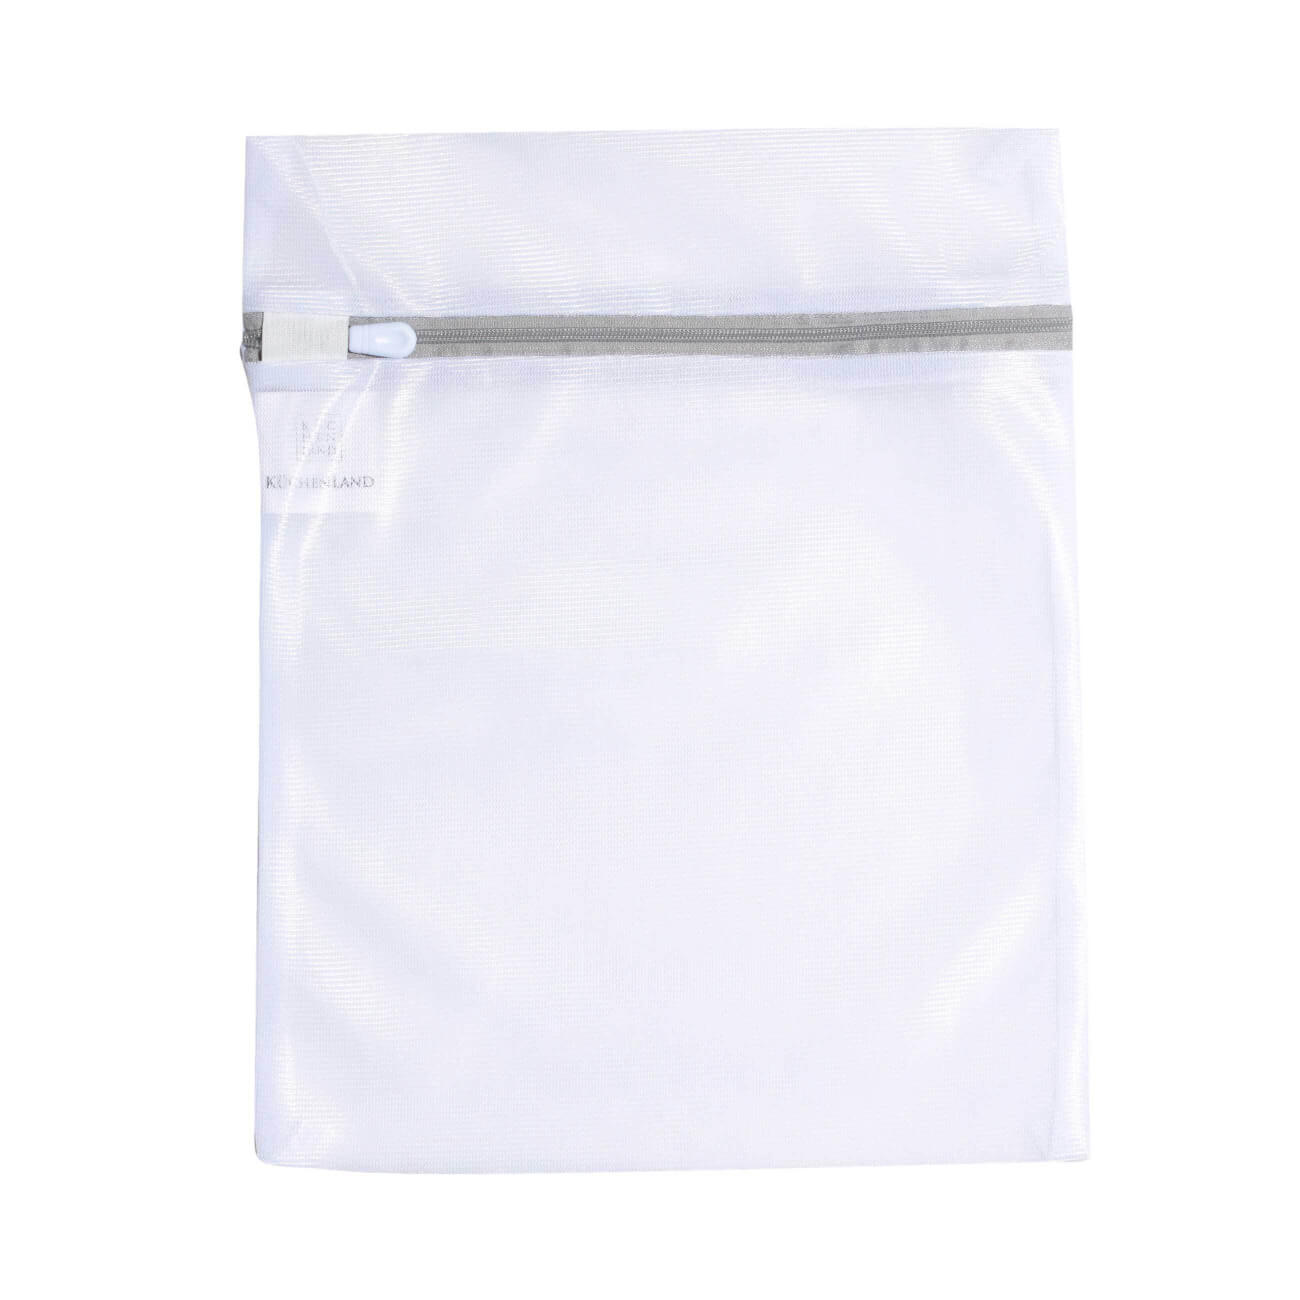 Мешок для стирки нижнего белья, 25х30 см, полиэстер, бело-серый, Safety plus мешок для стирки нижнего белья niklen 46x35 см